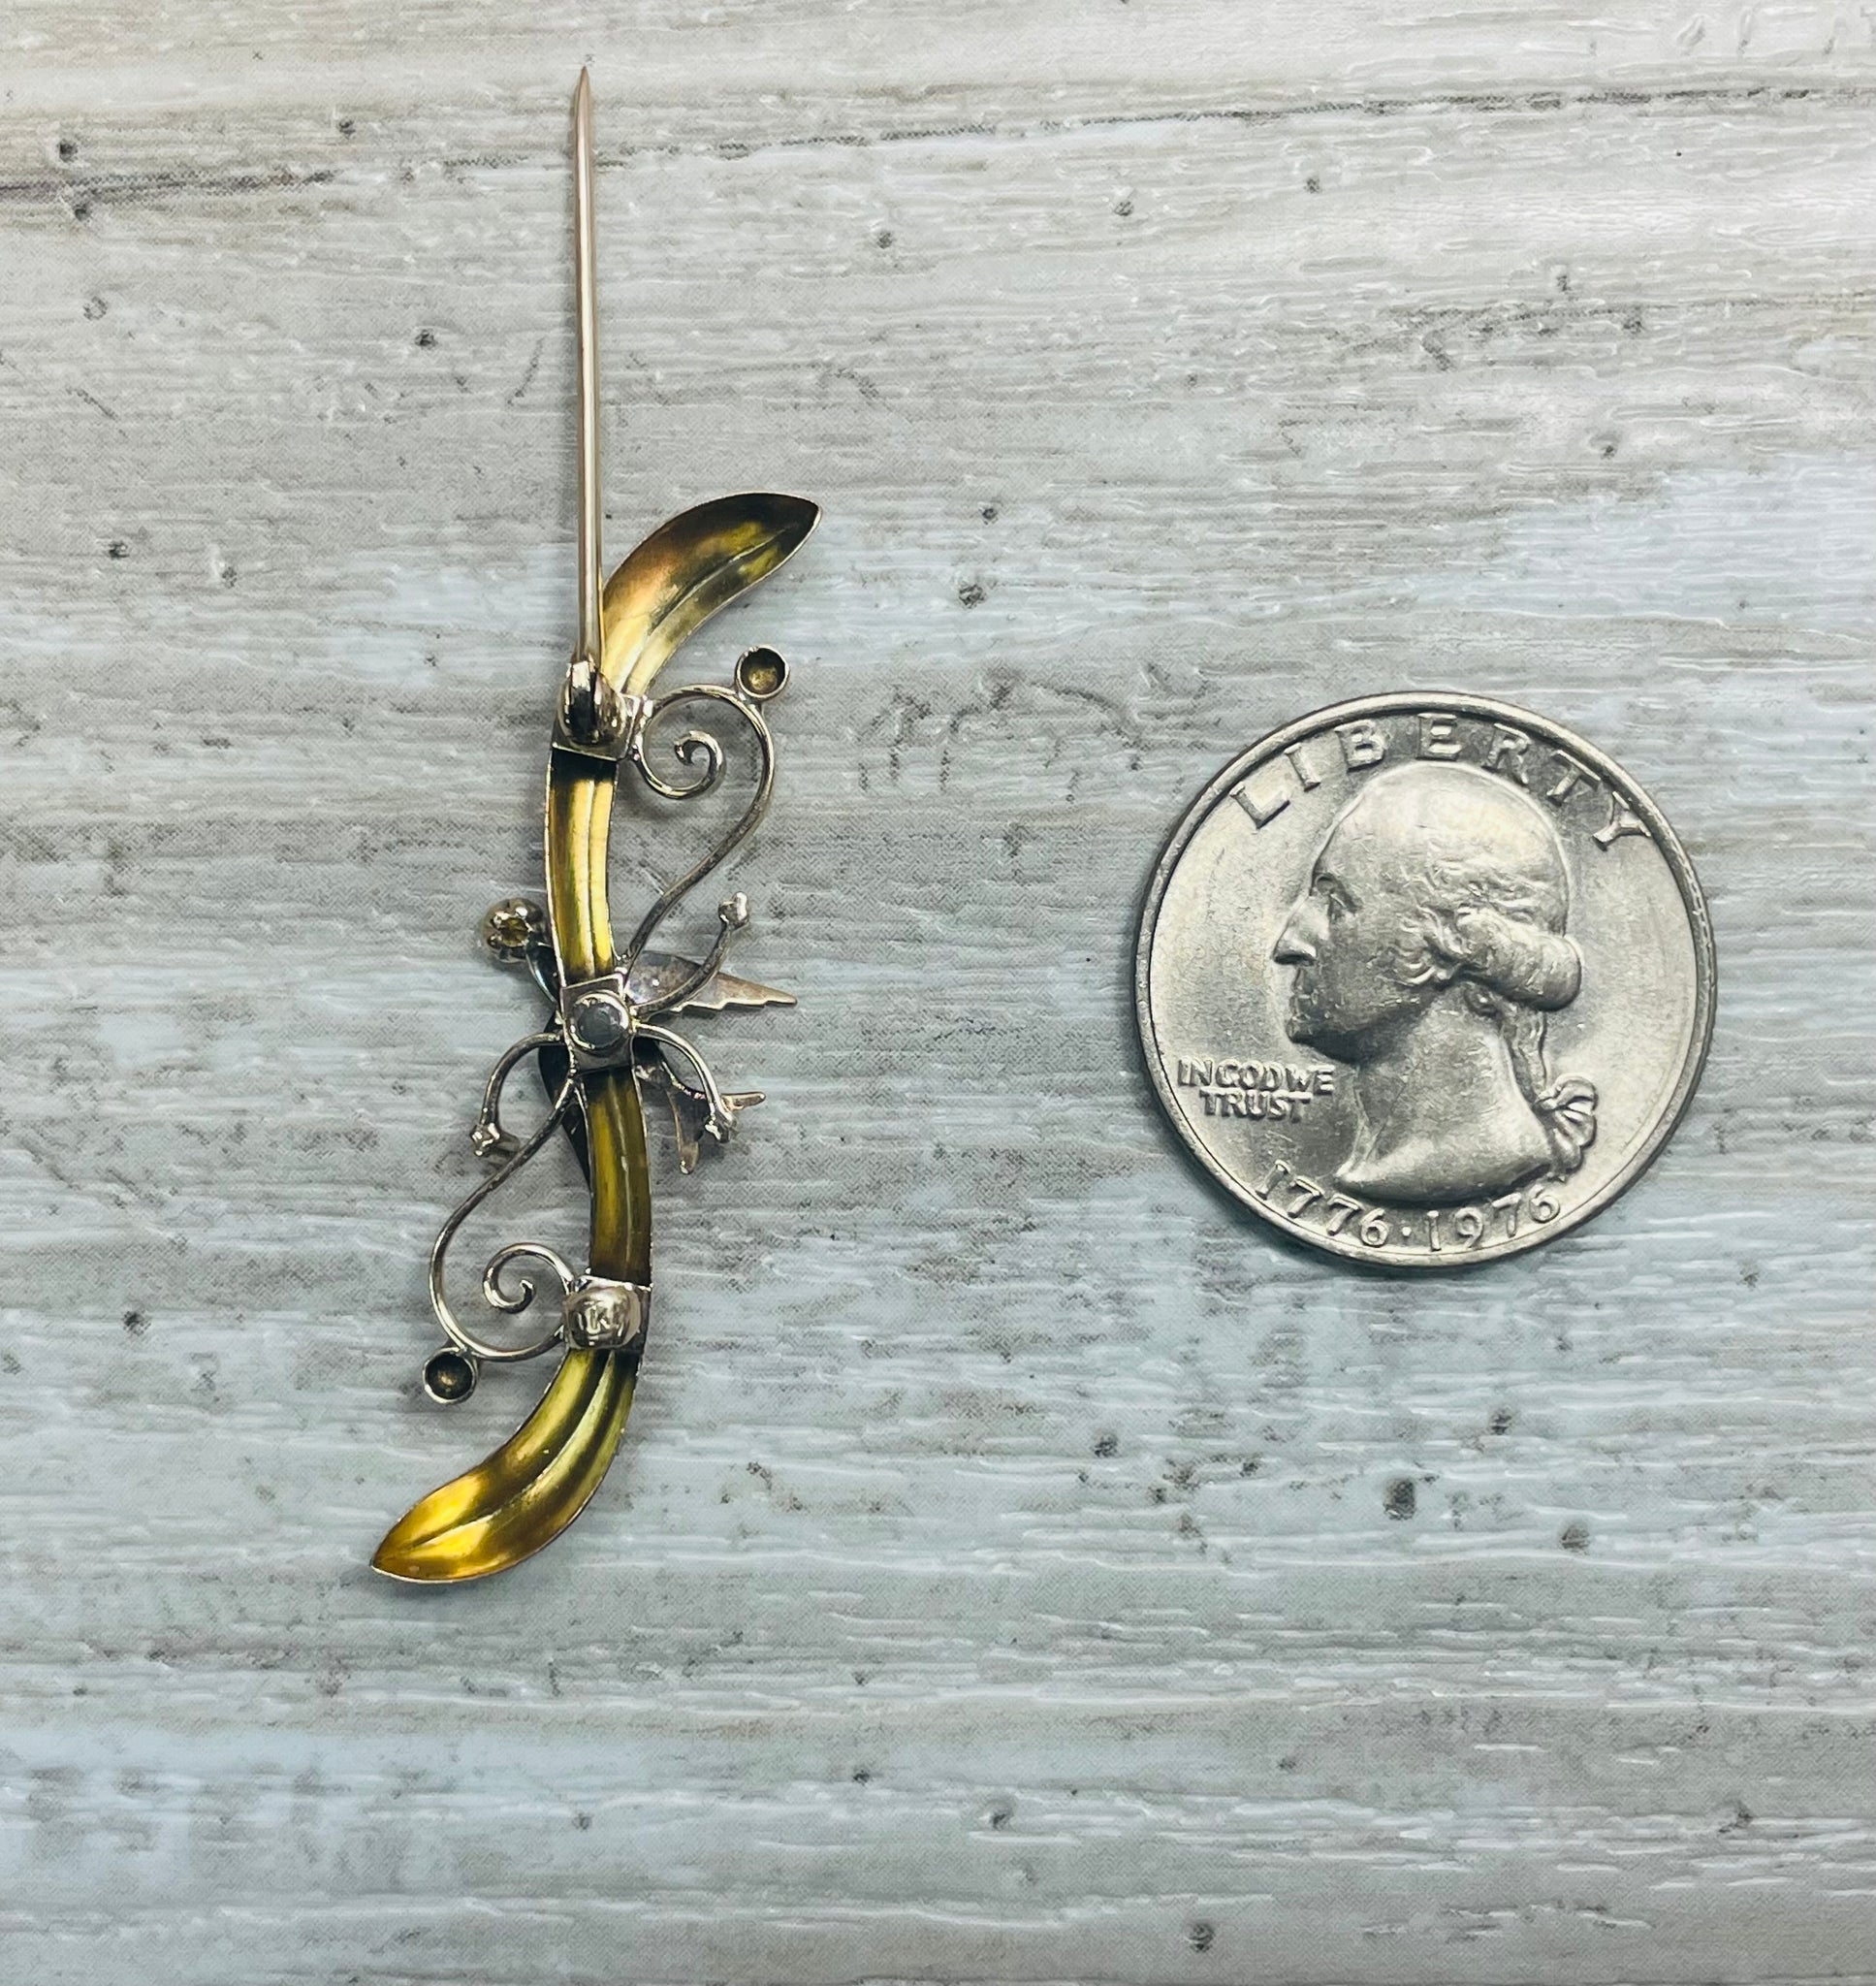 Victorian 10k Gold Sparrow Pin Brooch